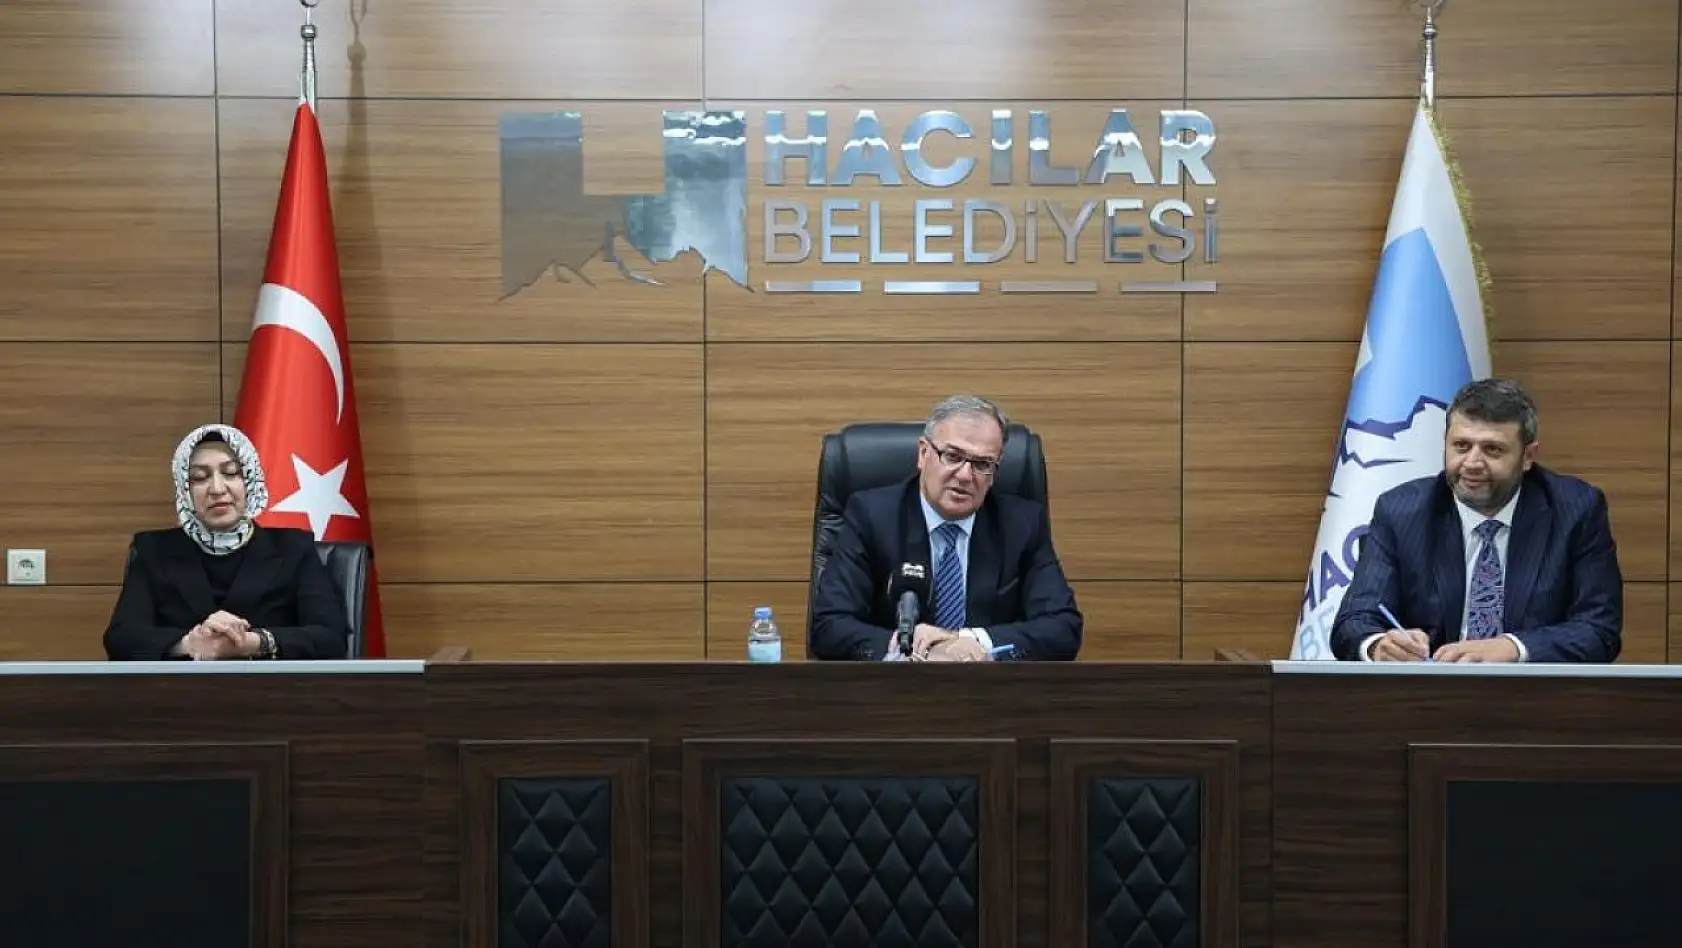 Hacılar Belediye Başkanı'ndan açıklama: İlçede yaz çalışmaları hızlandı...